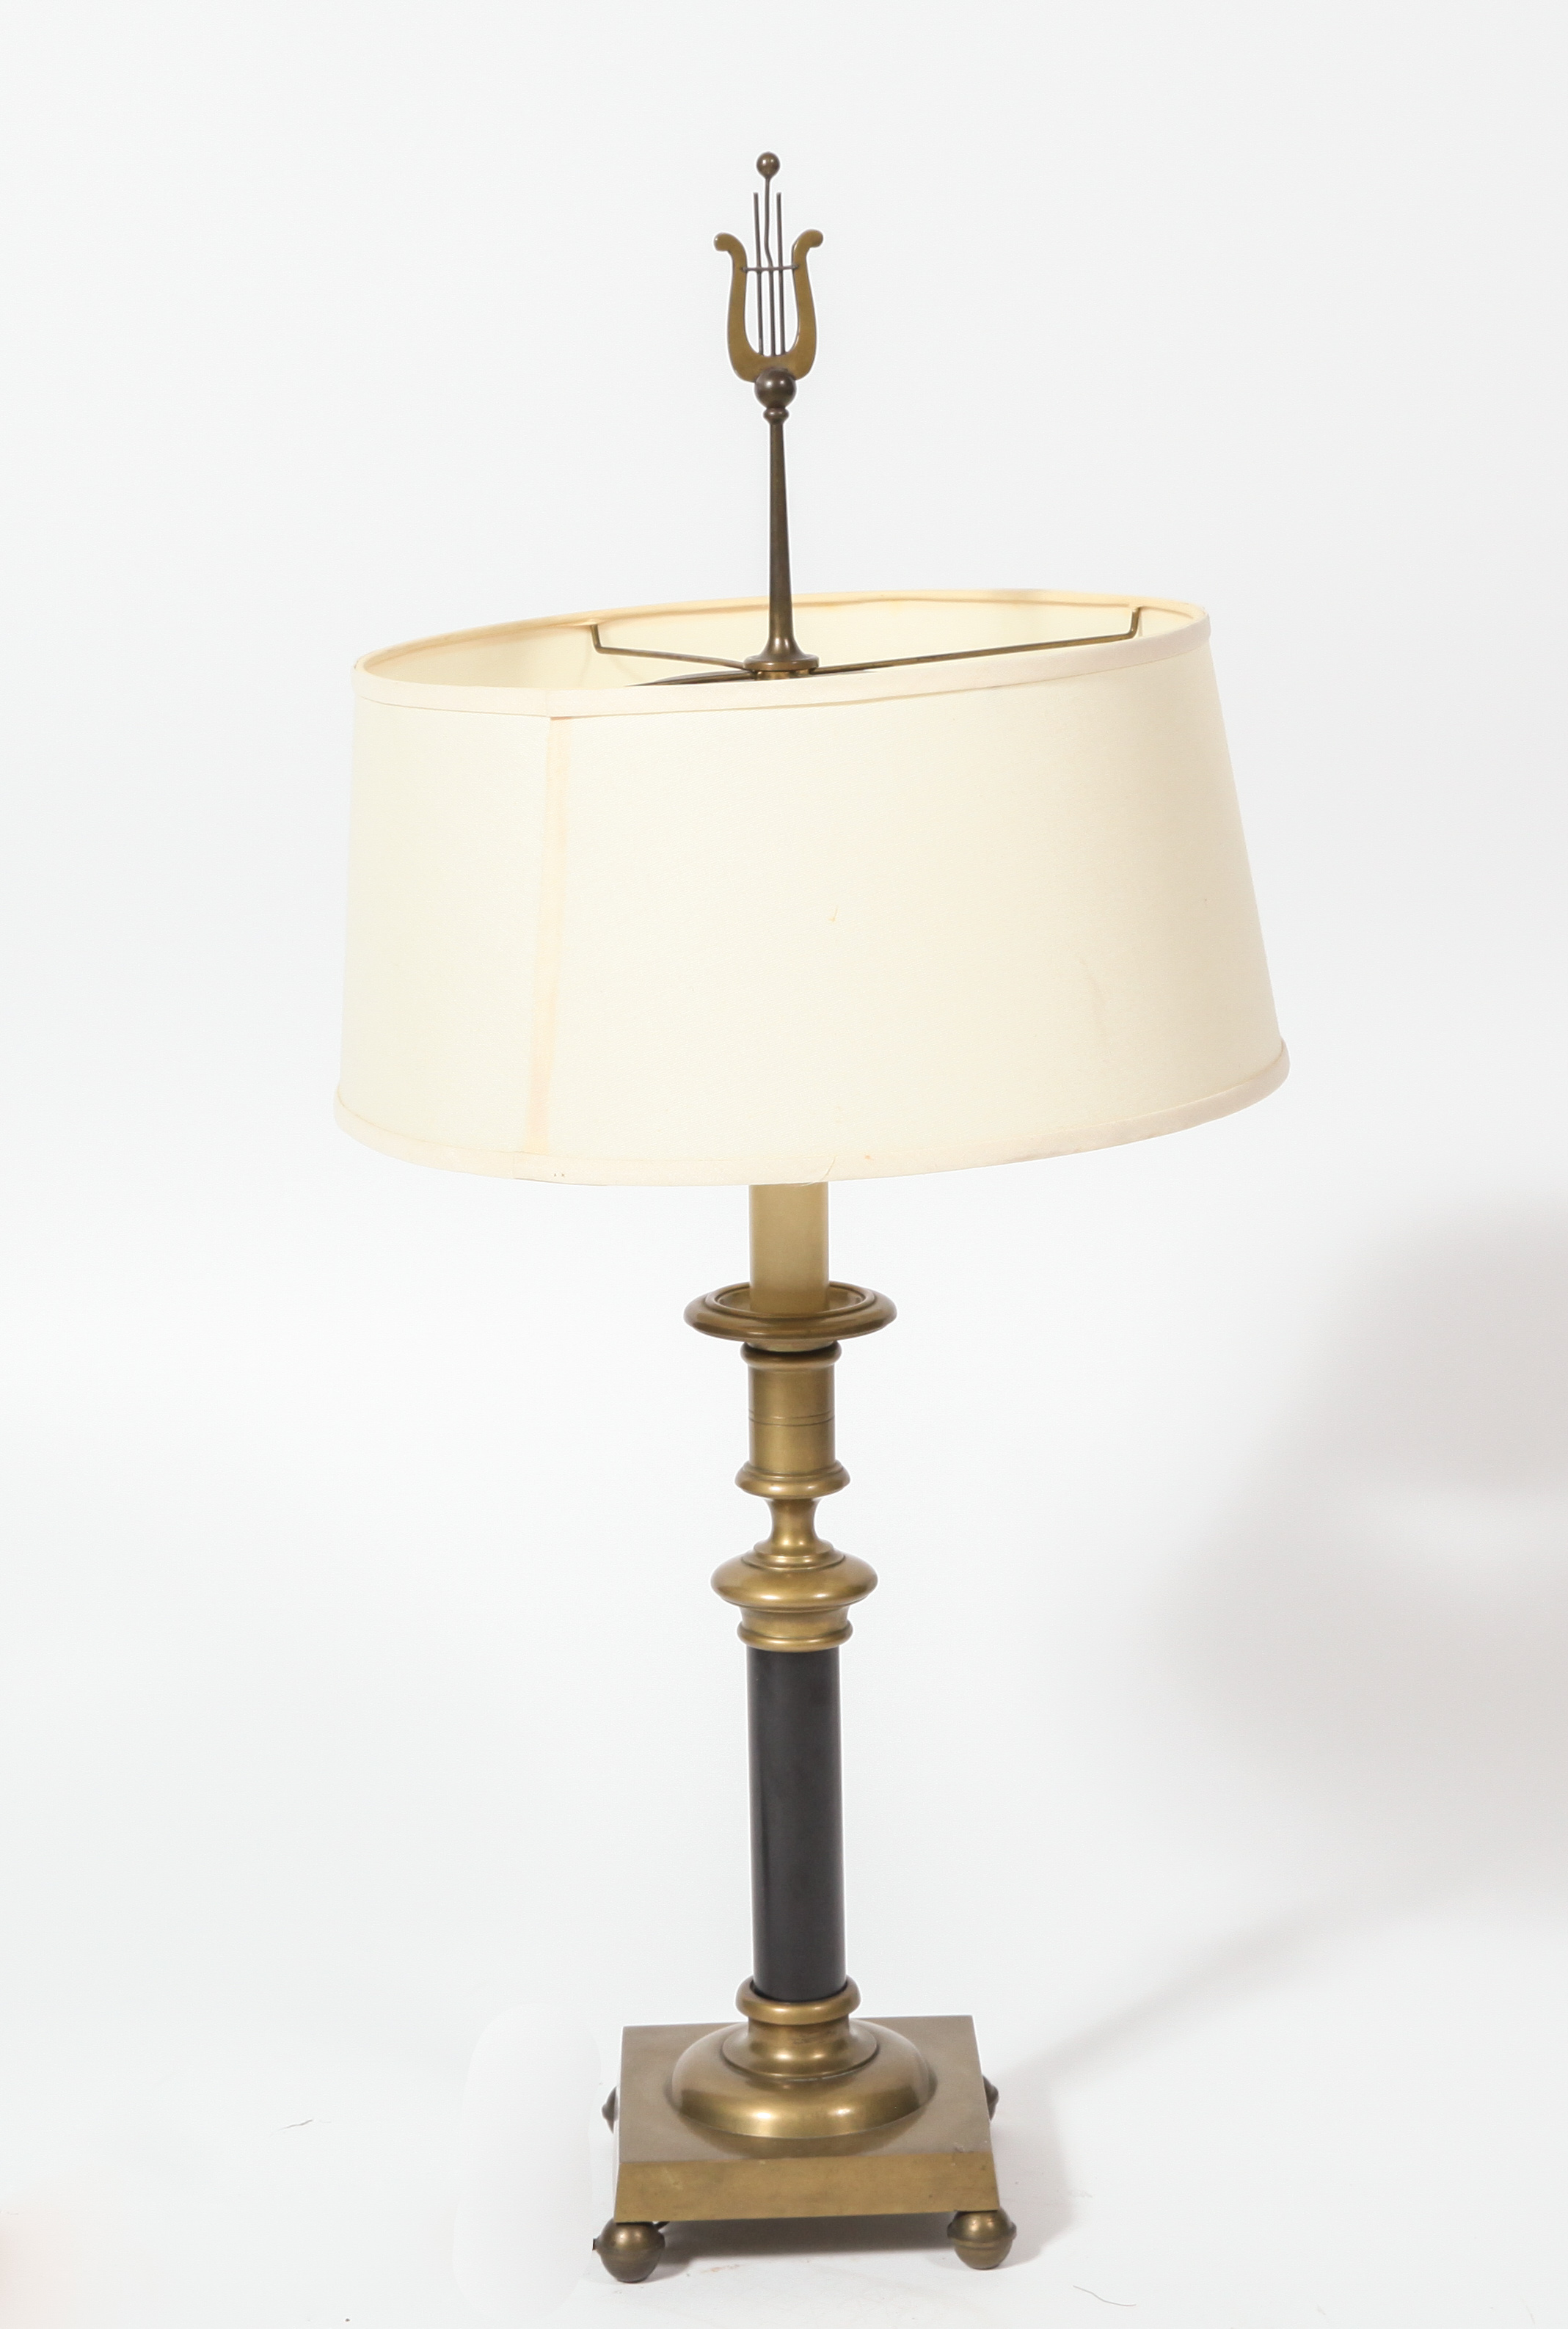 REGENCY MANNER BRASS TABLE LAMP